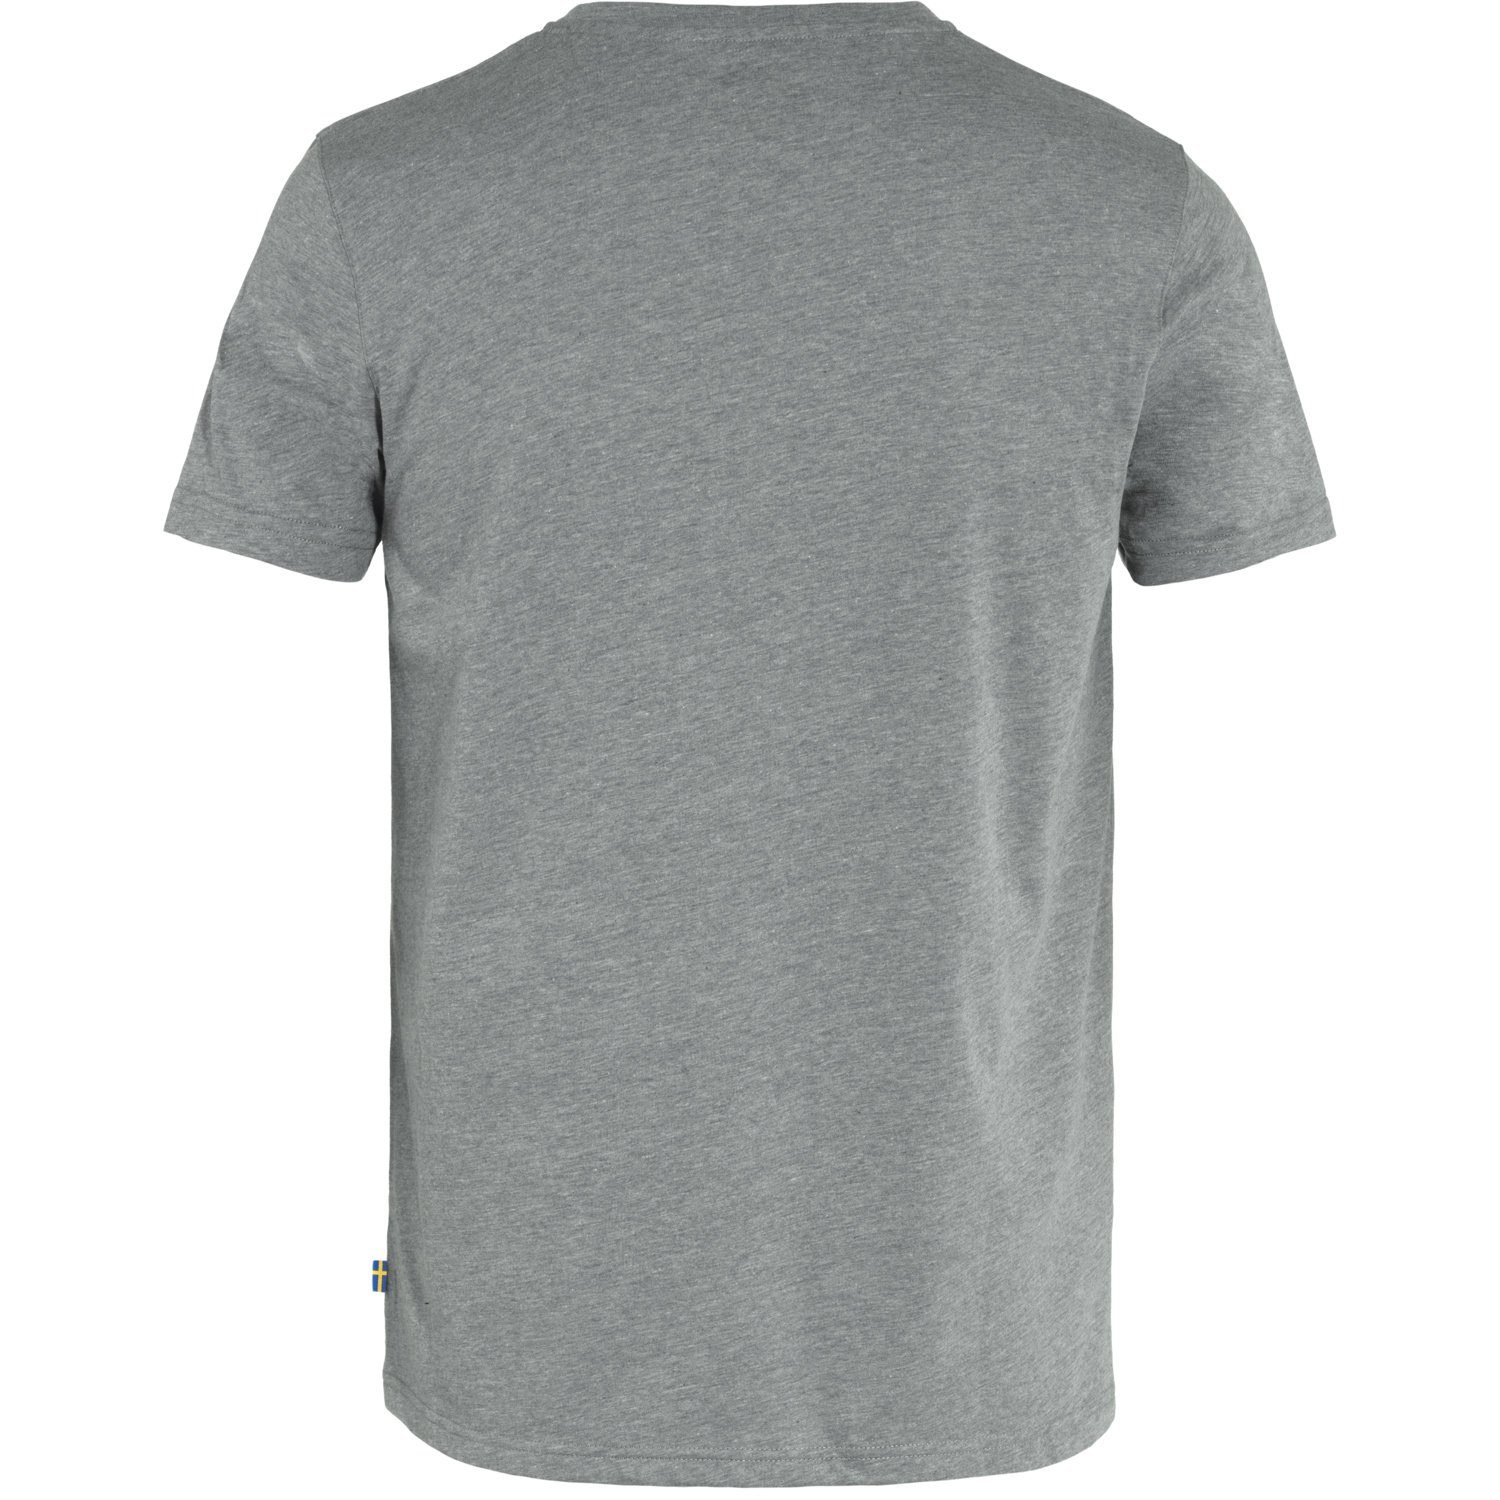 Fjällräven T-Shirt Fjällräven melange grey 1960 Logo Adult Herren T-Shirt